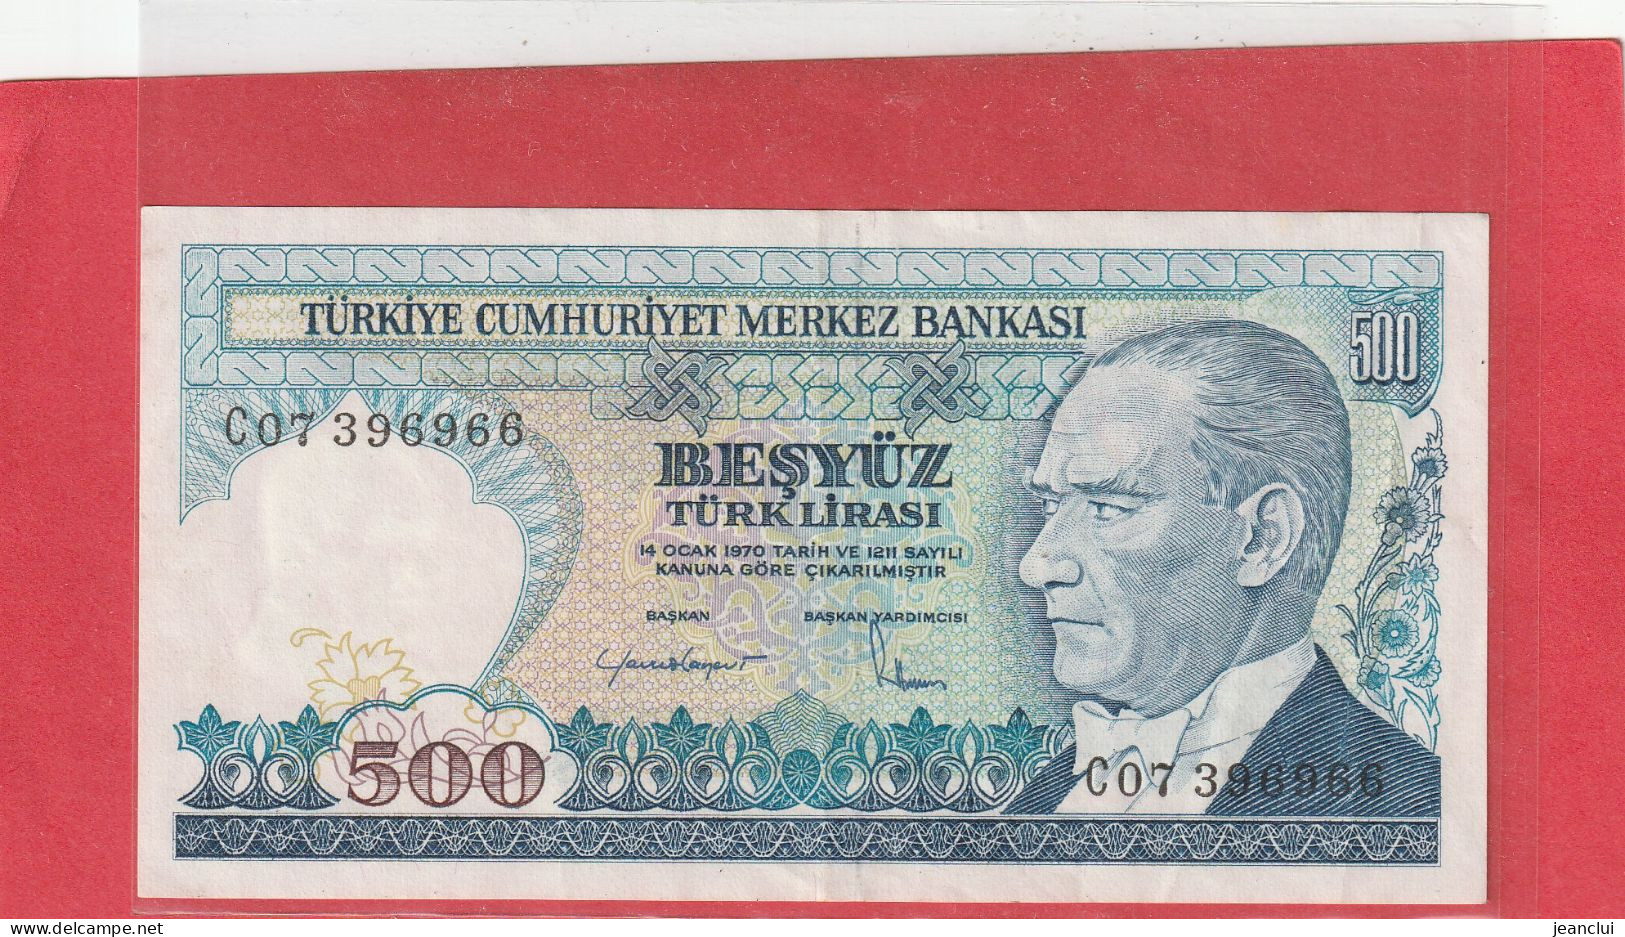 TURKIYE CUMHURIYET MERKEZ BANKASI . 500 LIRA . 14 OCAK 1970  . N°  C 07396966 .  2 SCANNES  .  BEL ETAT - Turquia